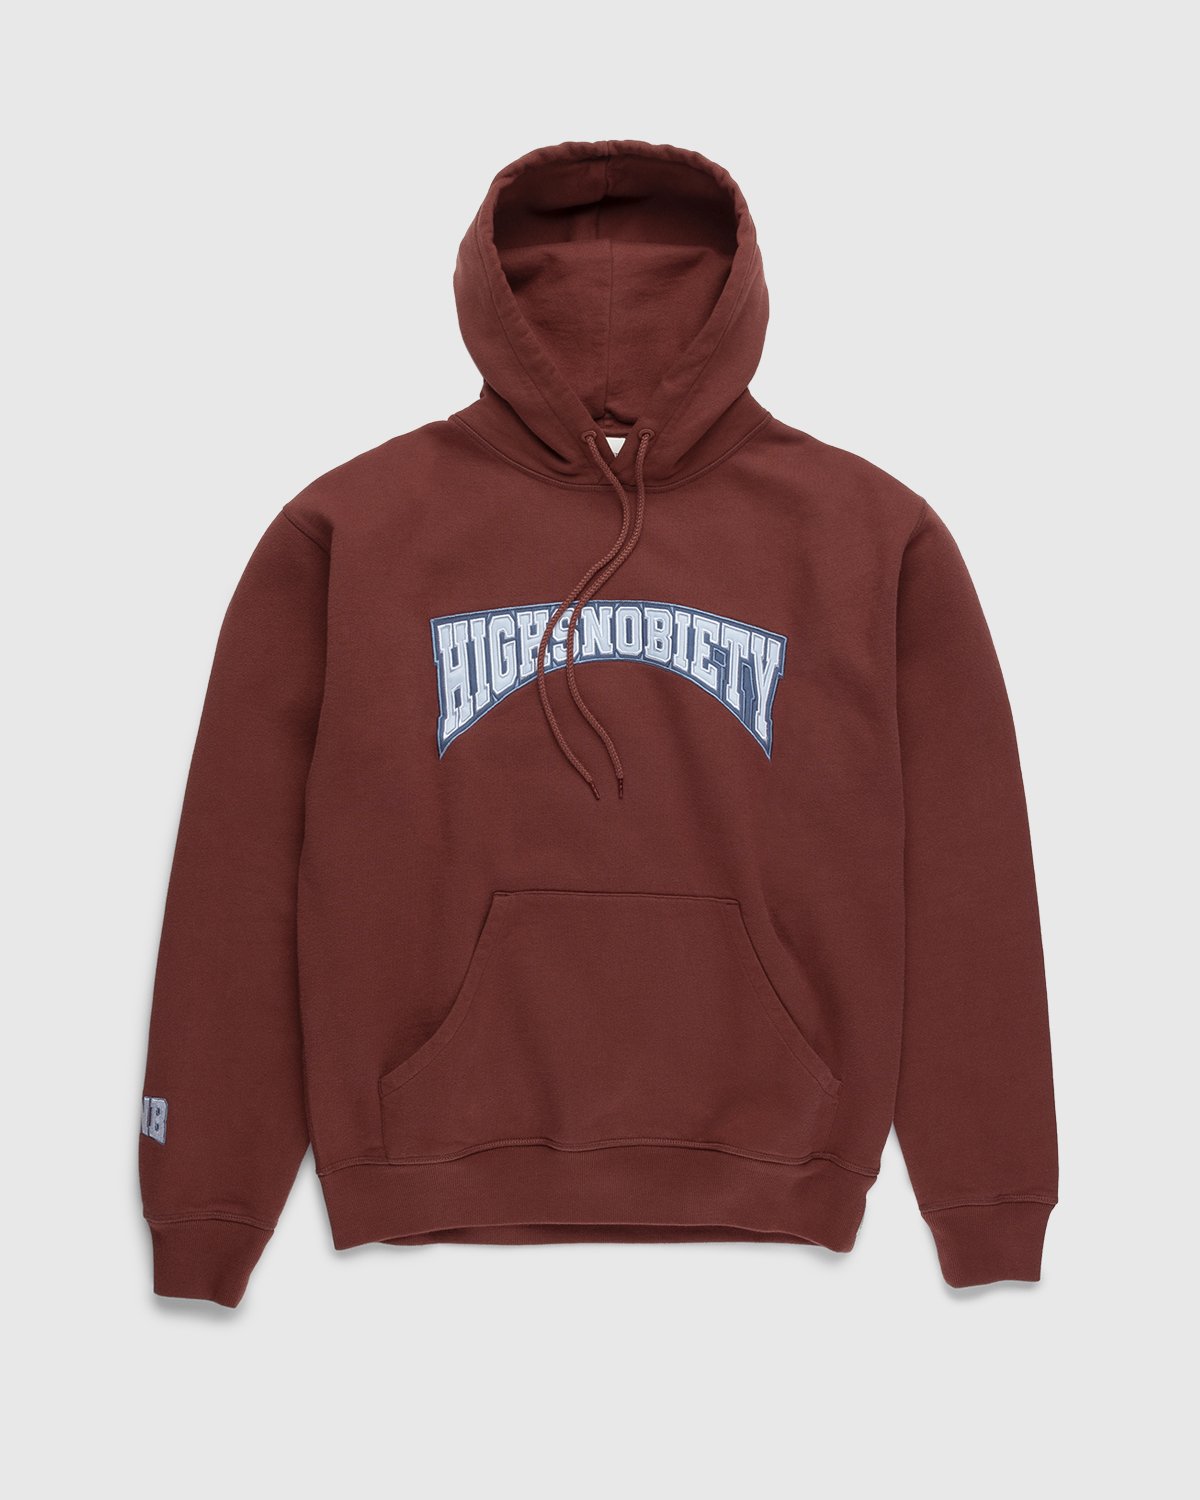 Highsnobiety - Collegiate Hoodie Brown - Clothing - Brown - Image 1